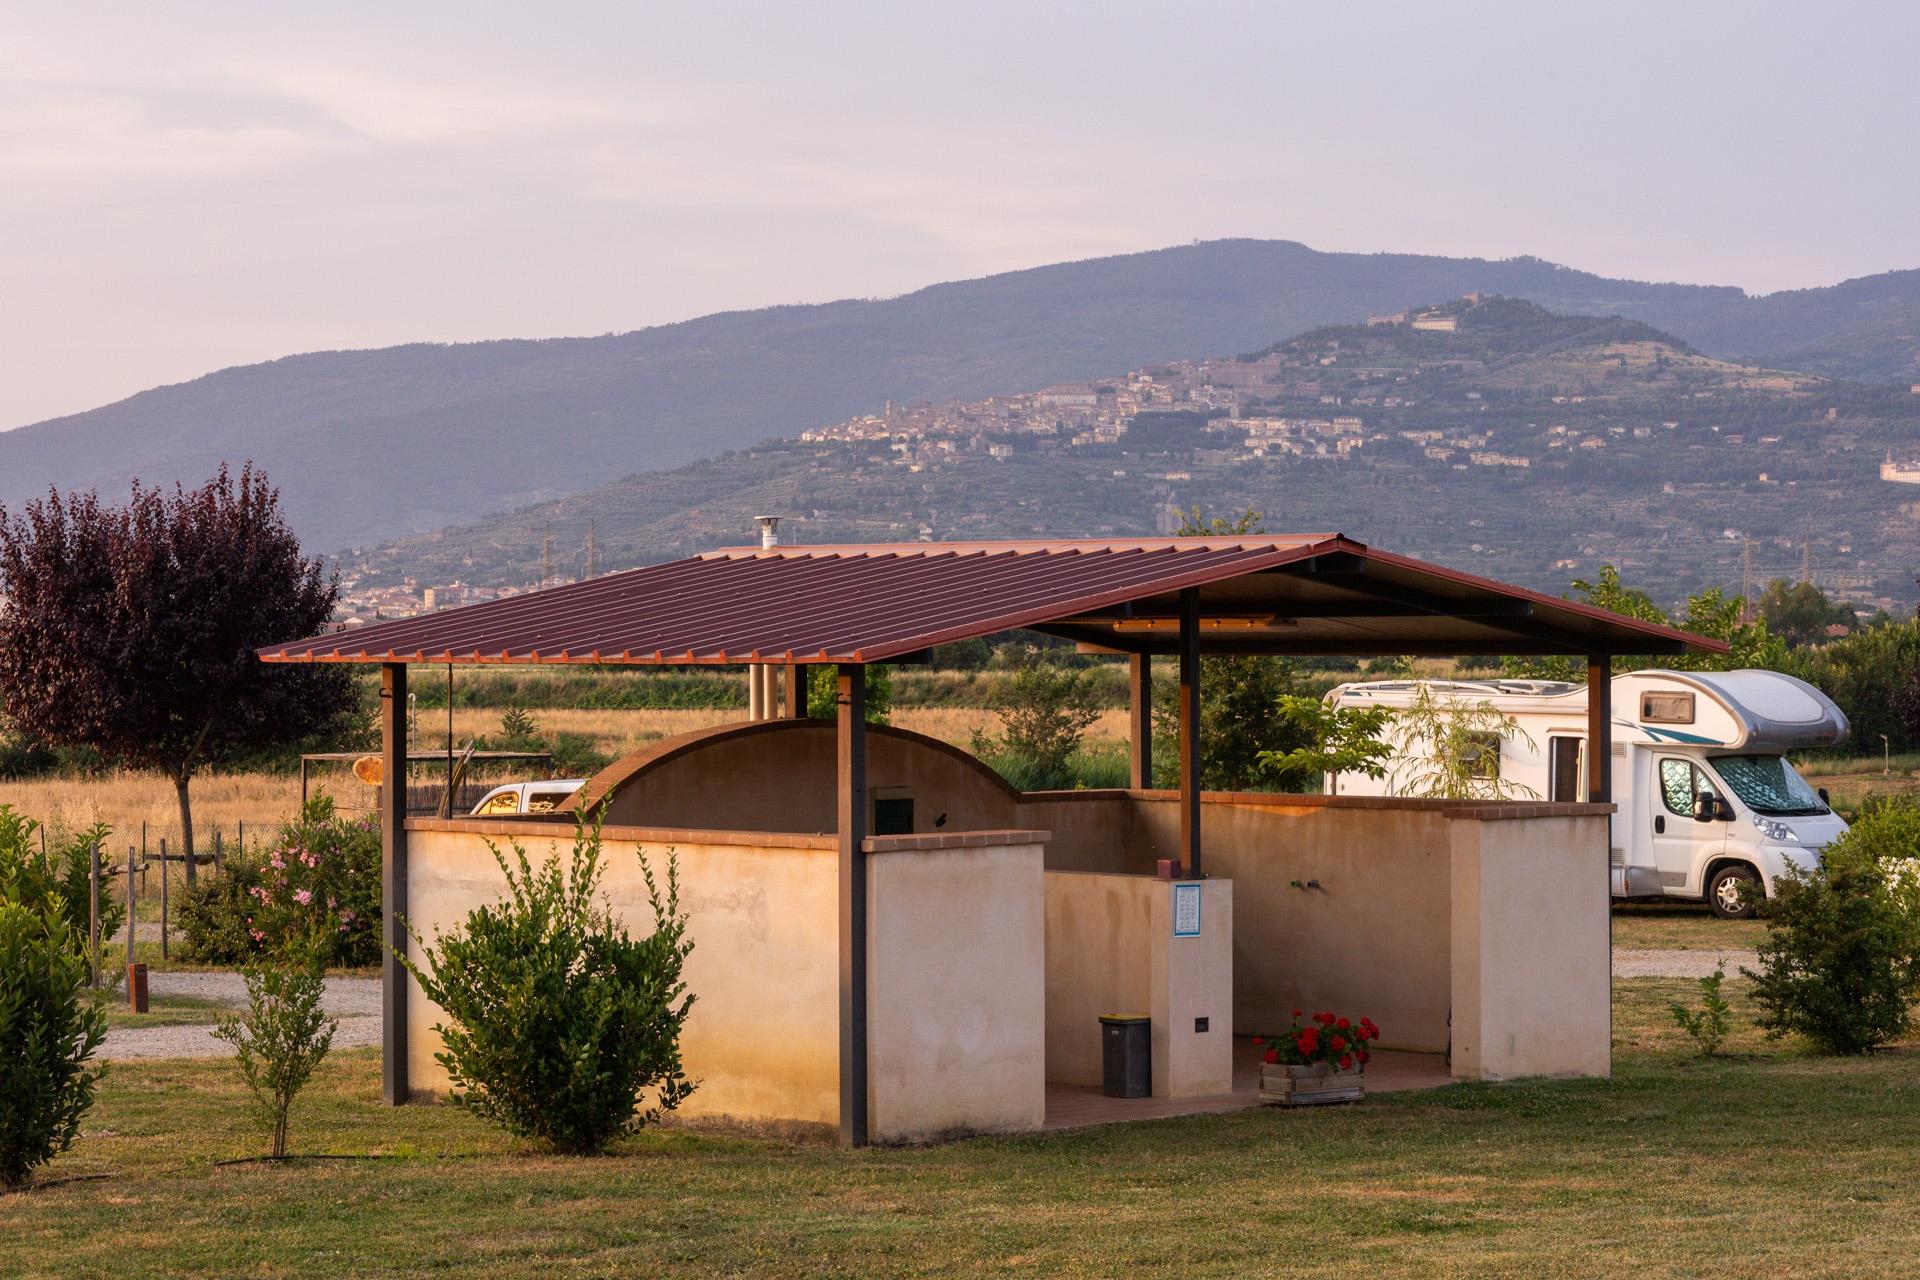 Camping Cortona con piscina| Agricamping Toscana